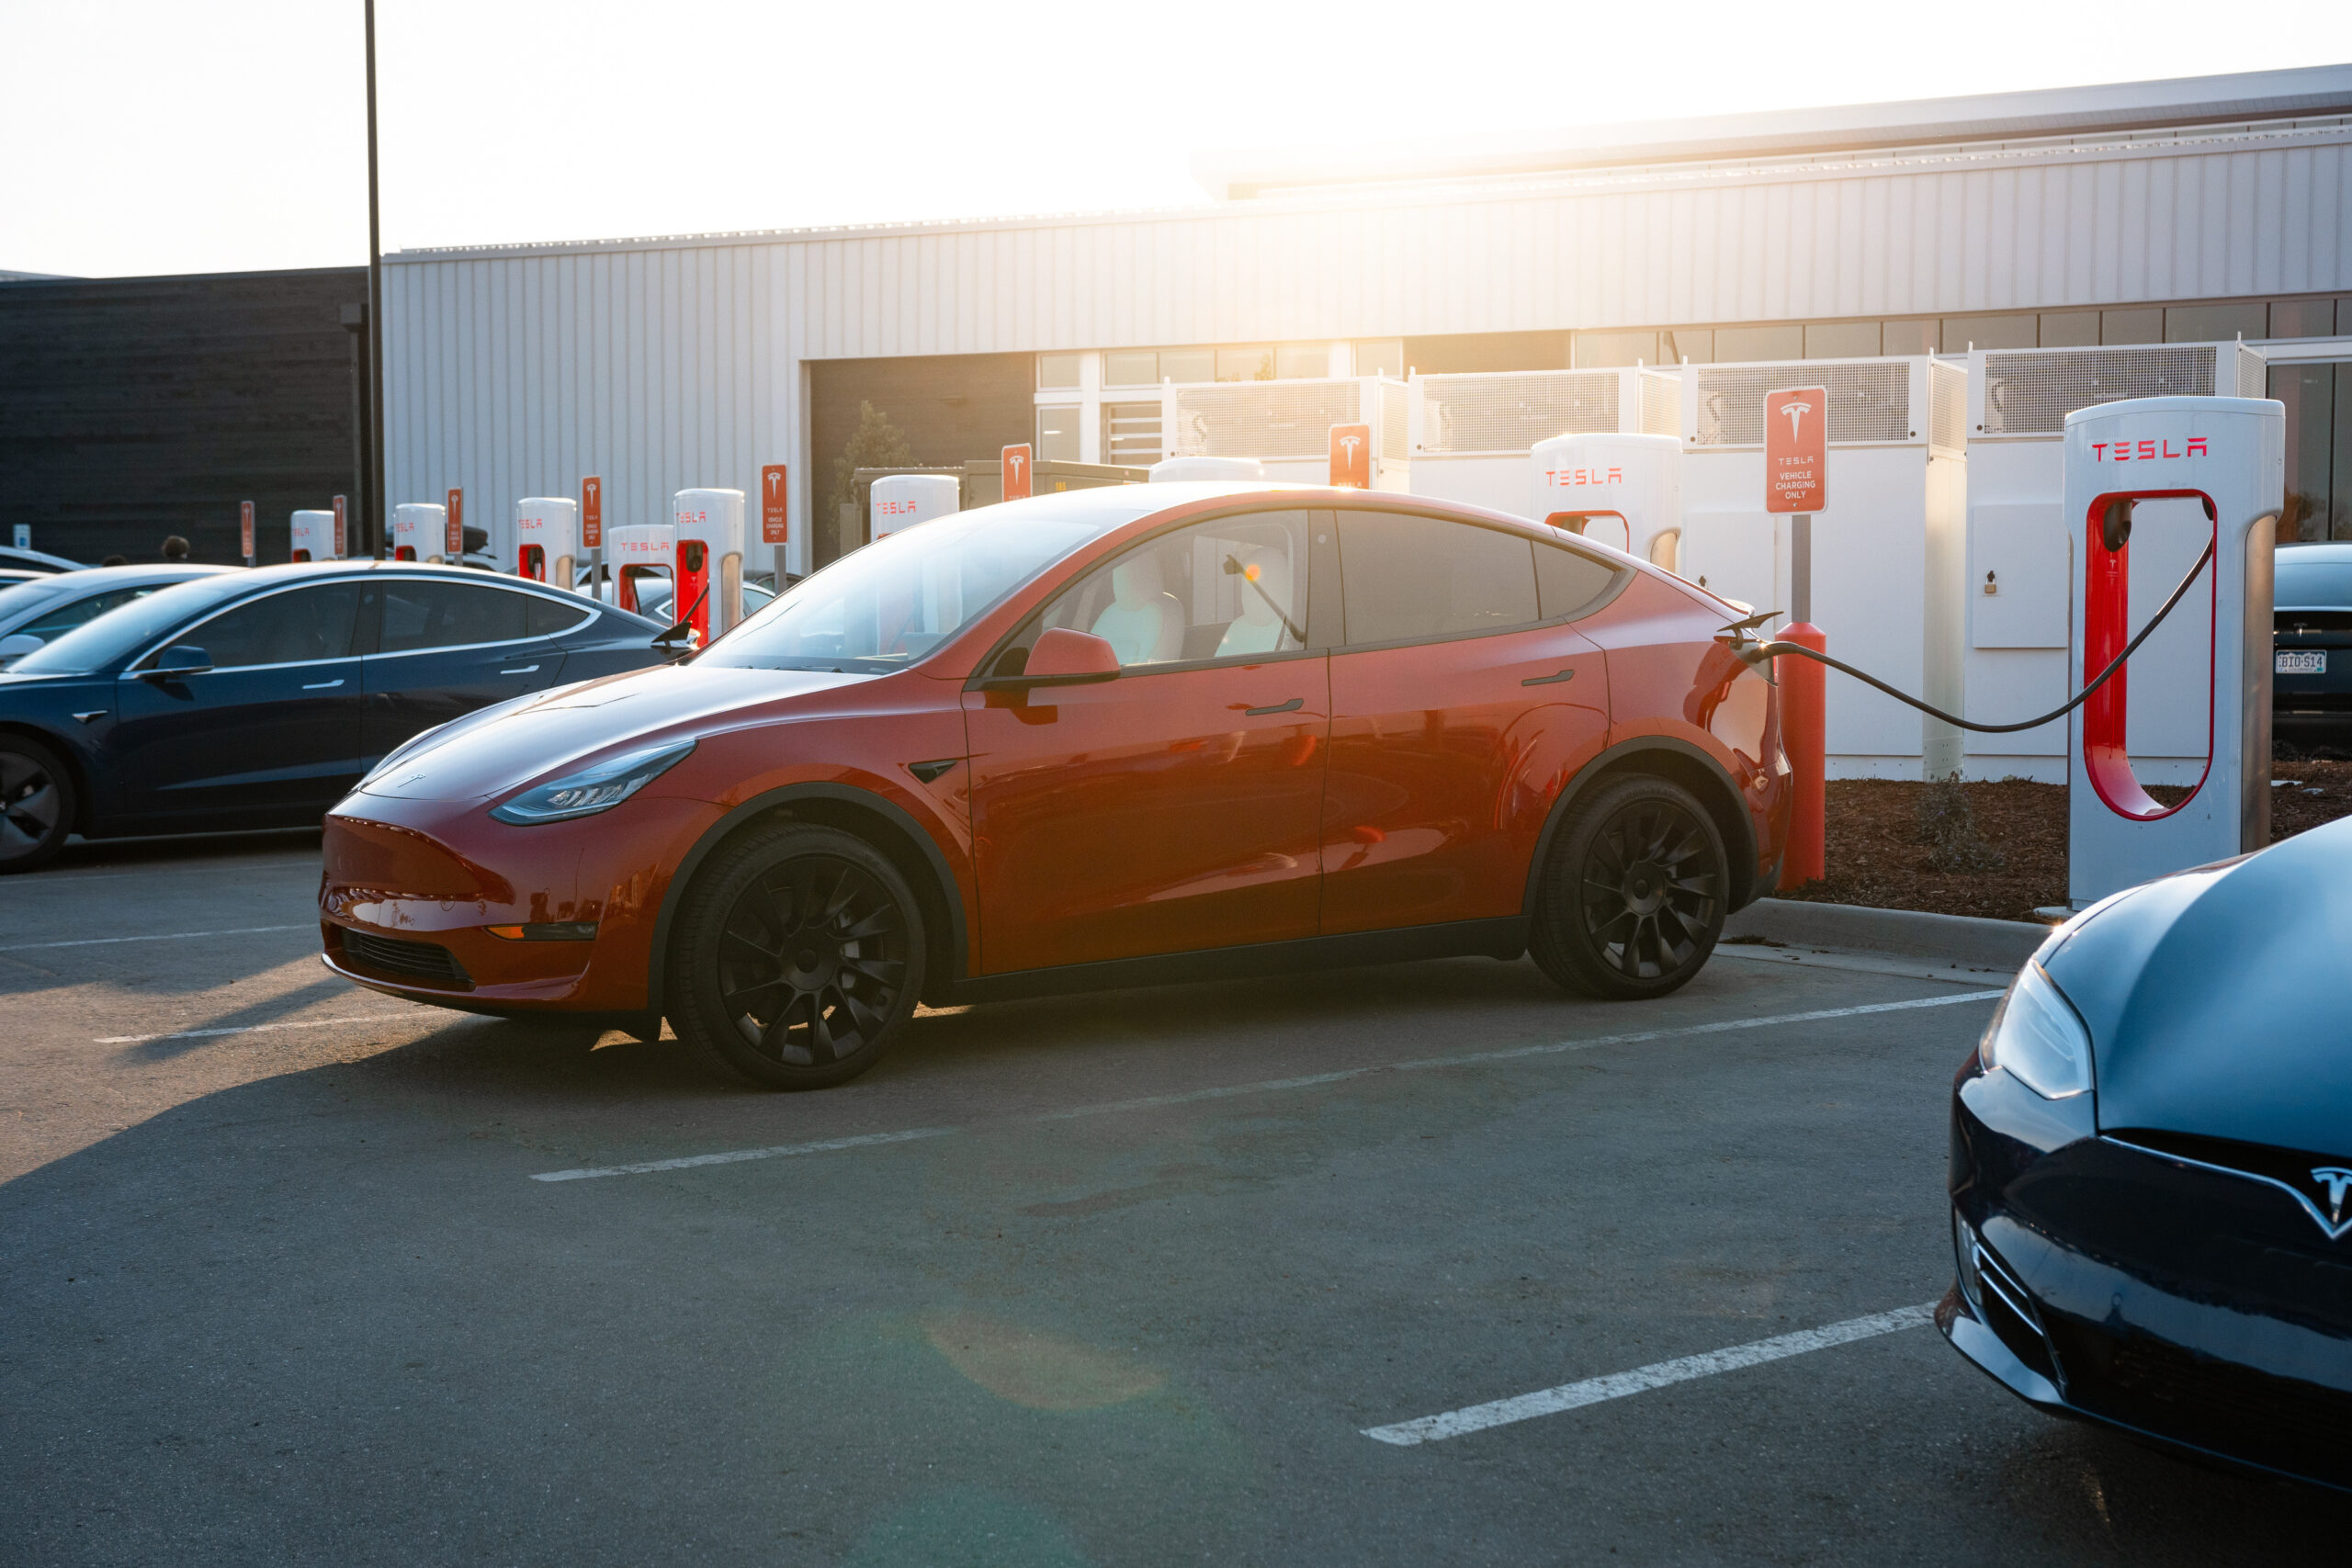 Tesla zhakowana przez nastolatka - 25 aut w 13 krajach przejętych